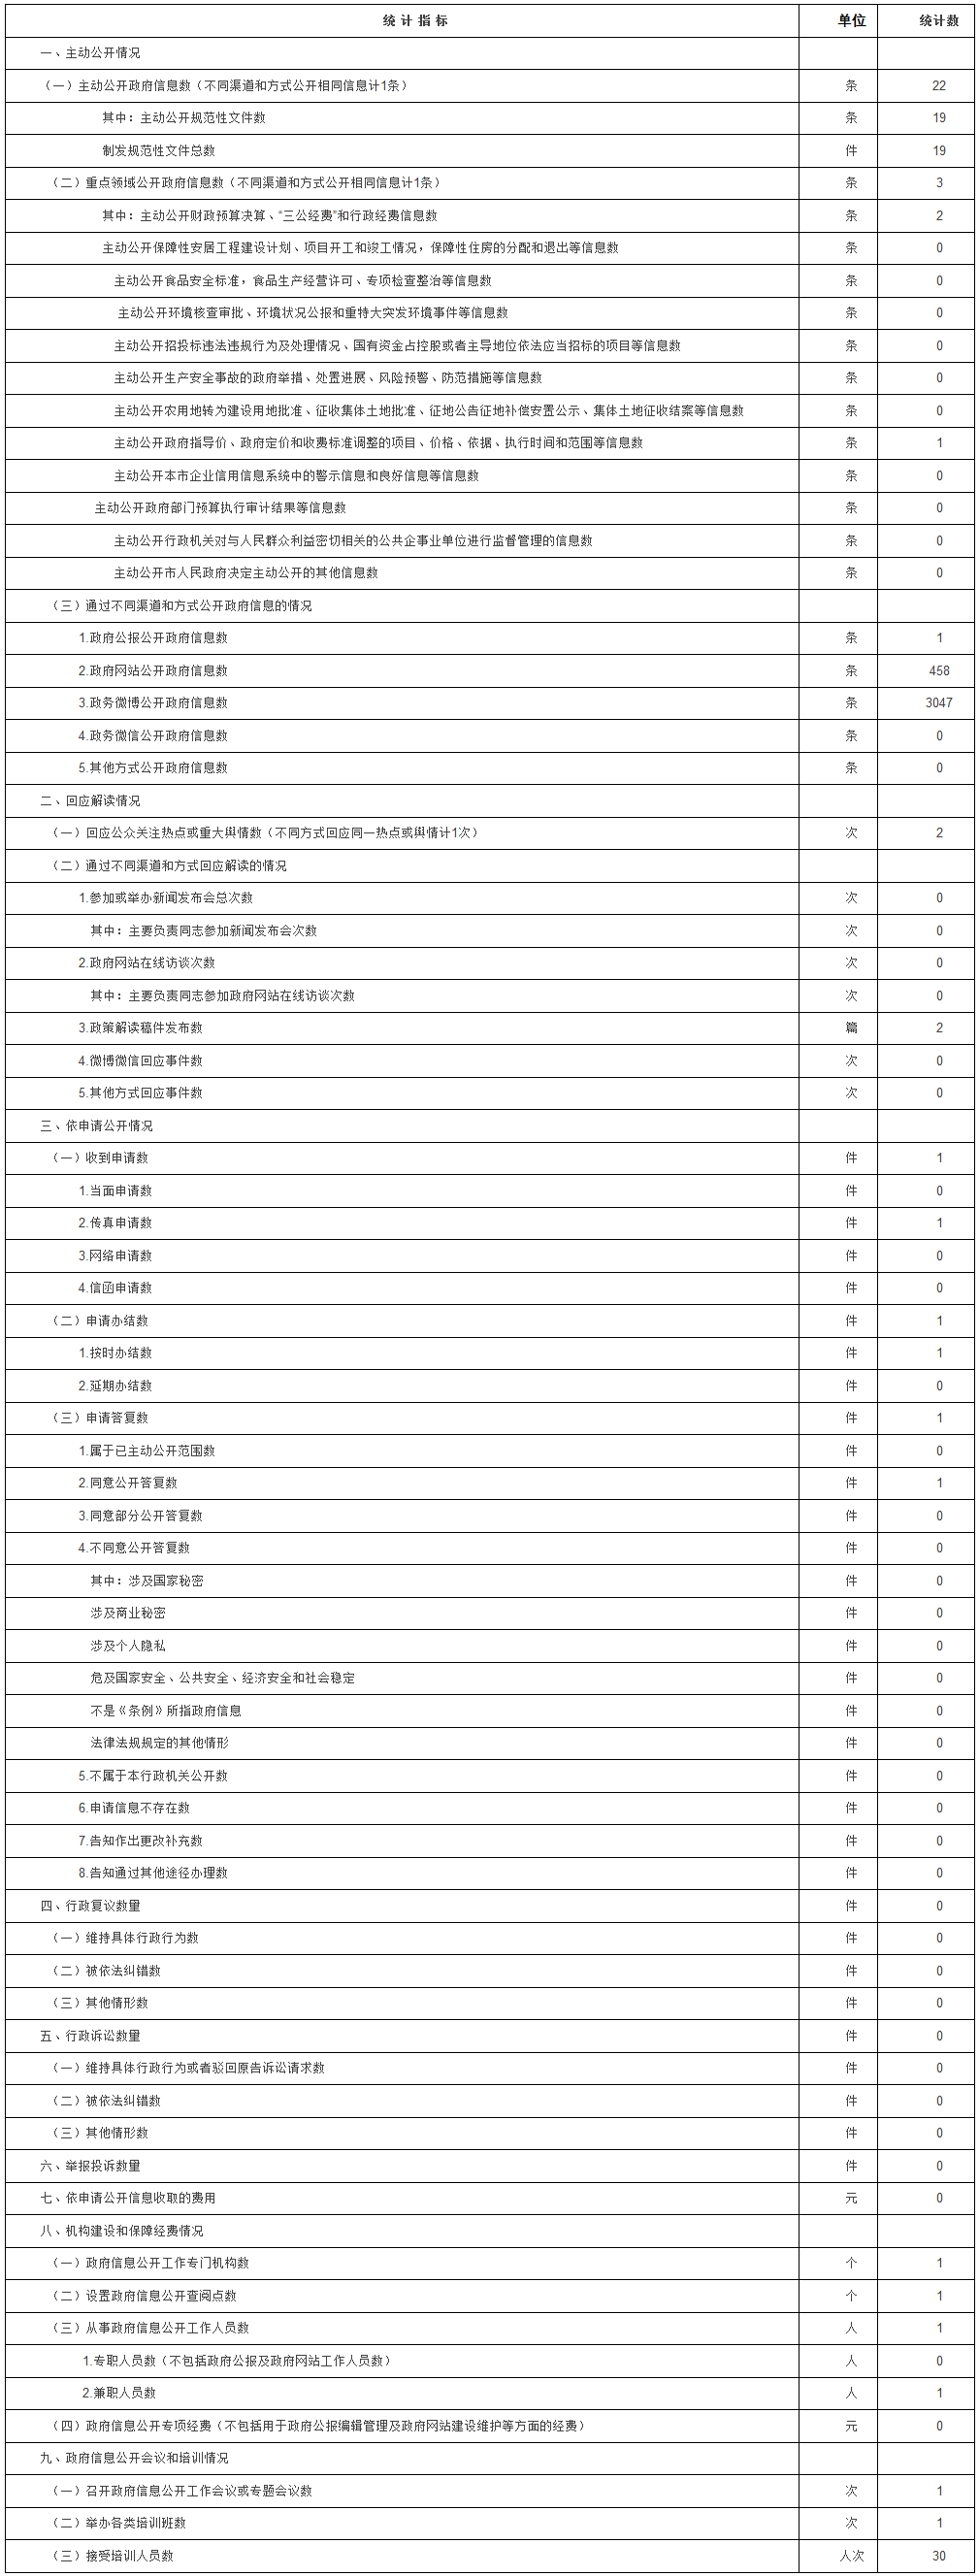 北京市糧食局政府信息公開情況統計表（2017年度）